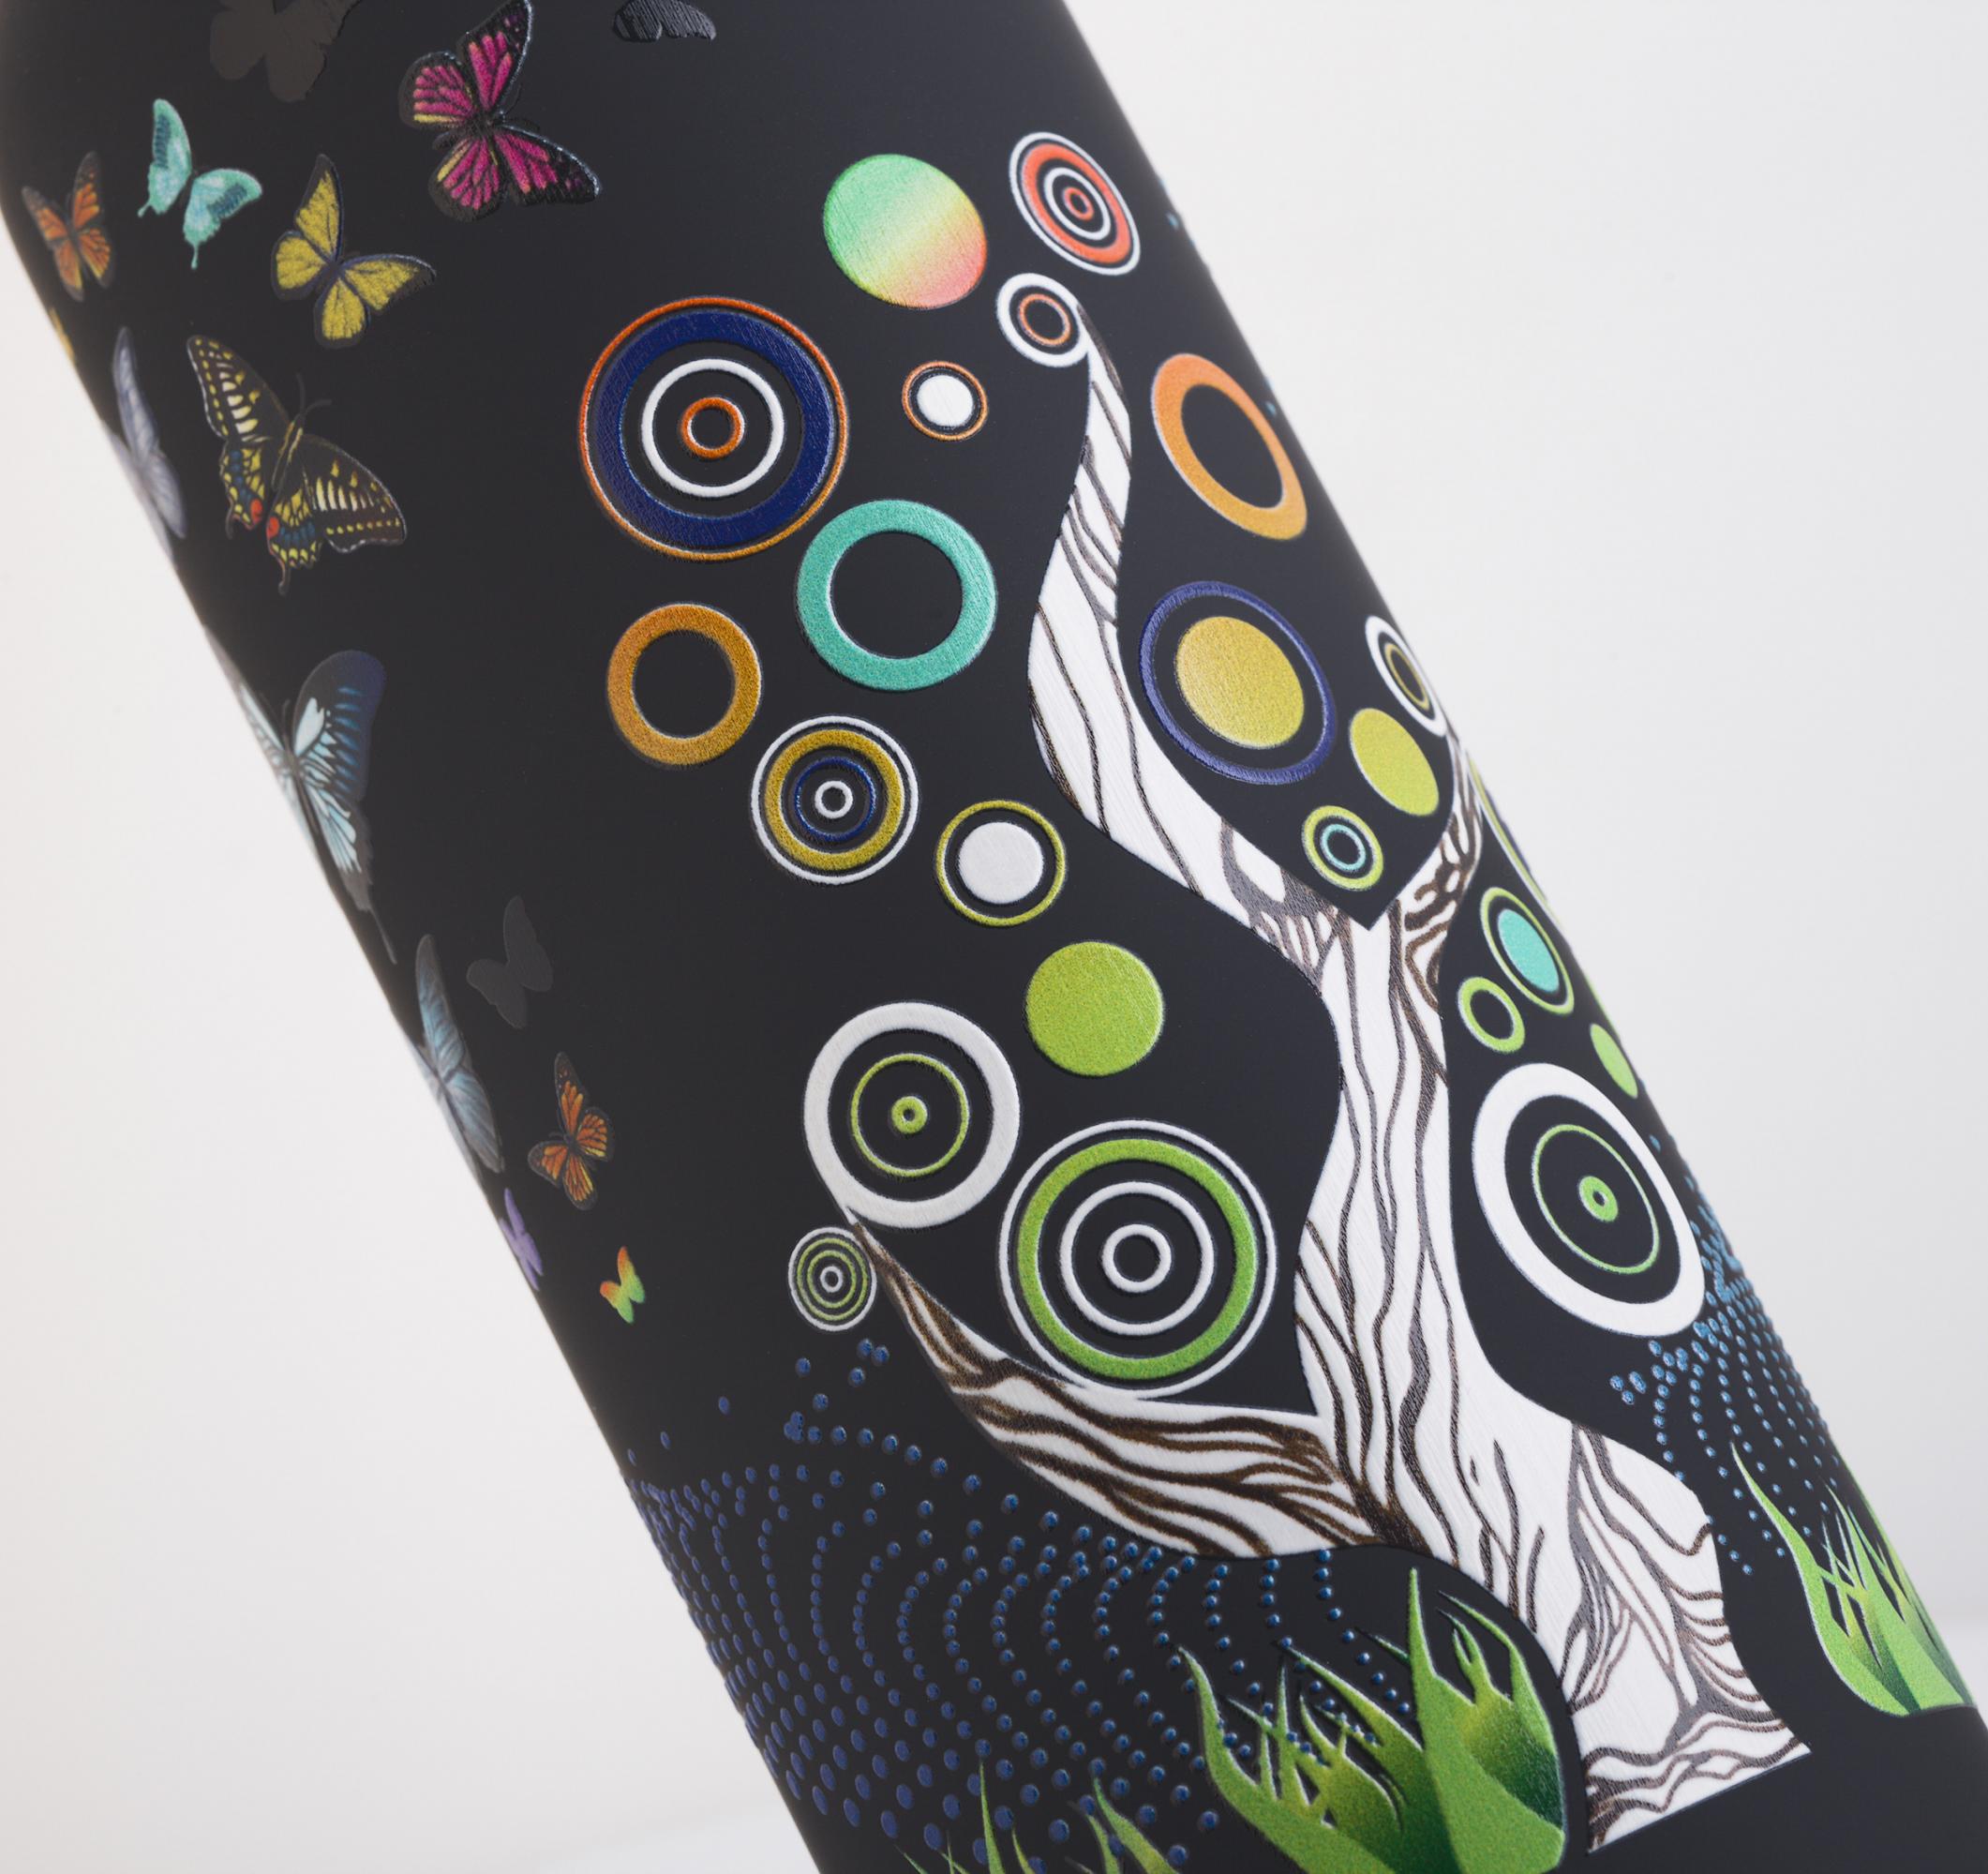 Термобутылка "Бабочки" с объемной UF печатью по окружности, покрытие soft touch, цвет черный, фото 3